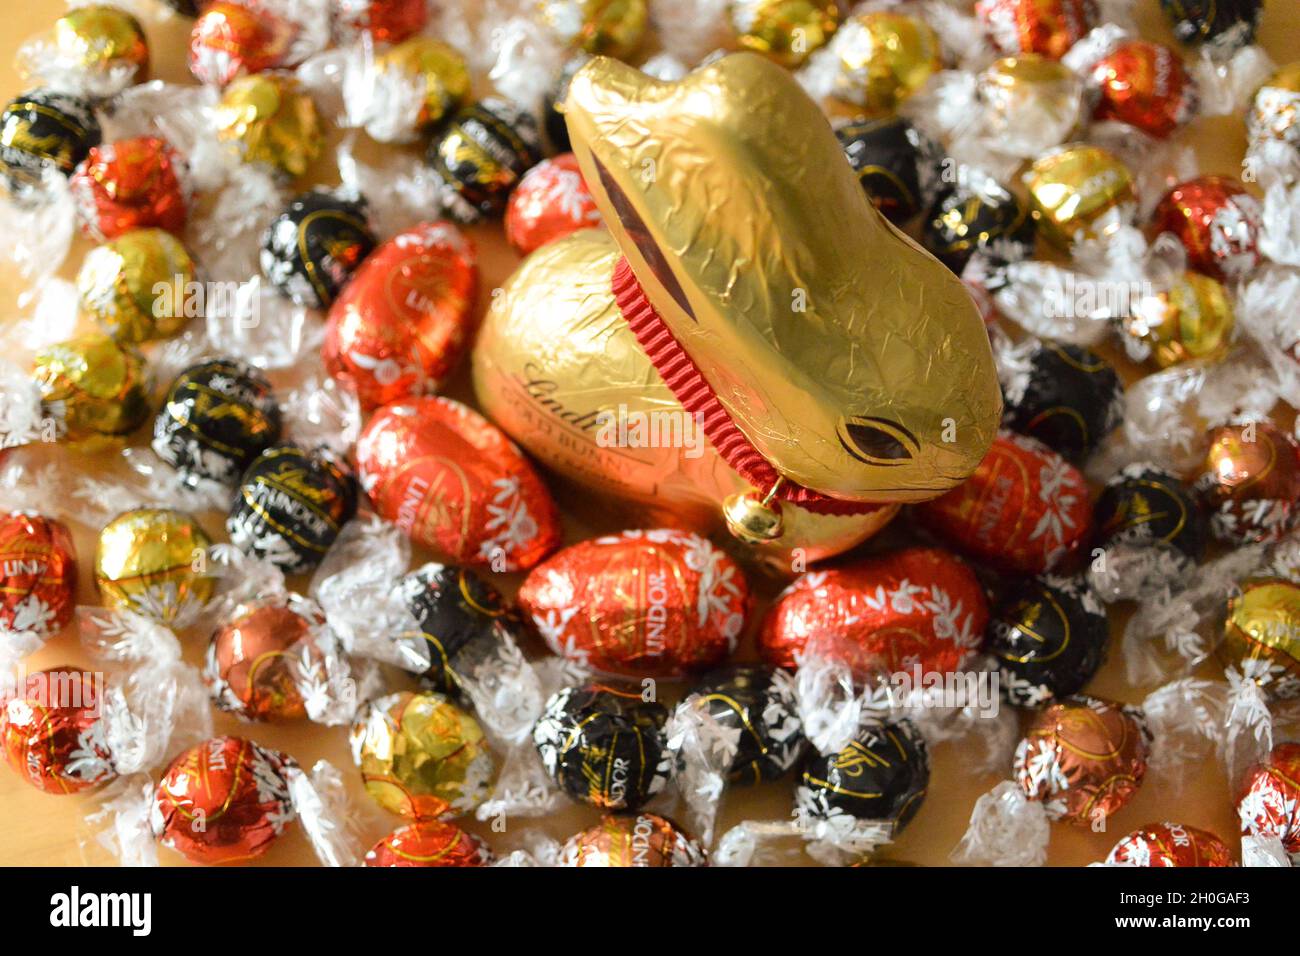 L'iconico coniglio di cioccolato Lindt avvolto in lamina d'oro con un caratteristico colletto rosso e campana, circondato da mini uova di Pasqua al cioccolato e palline Lindor Foto Stock